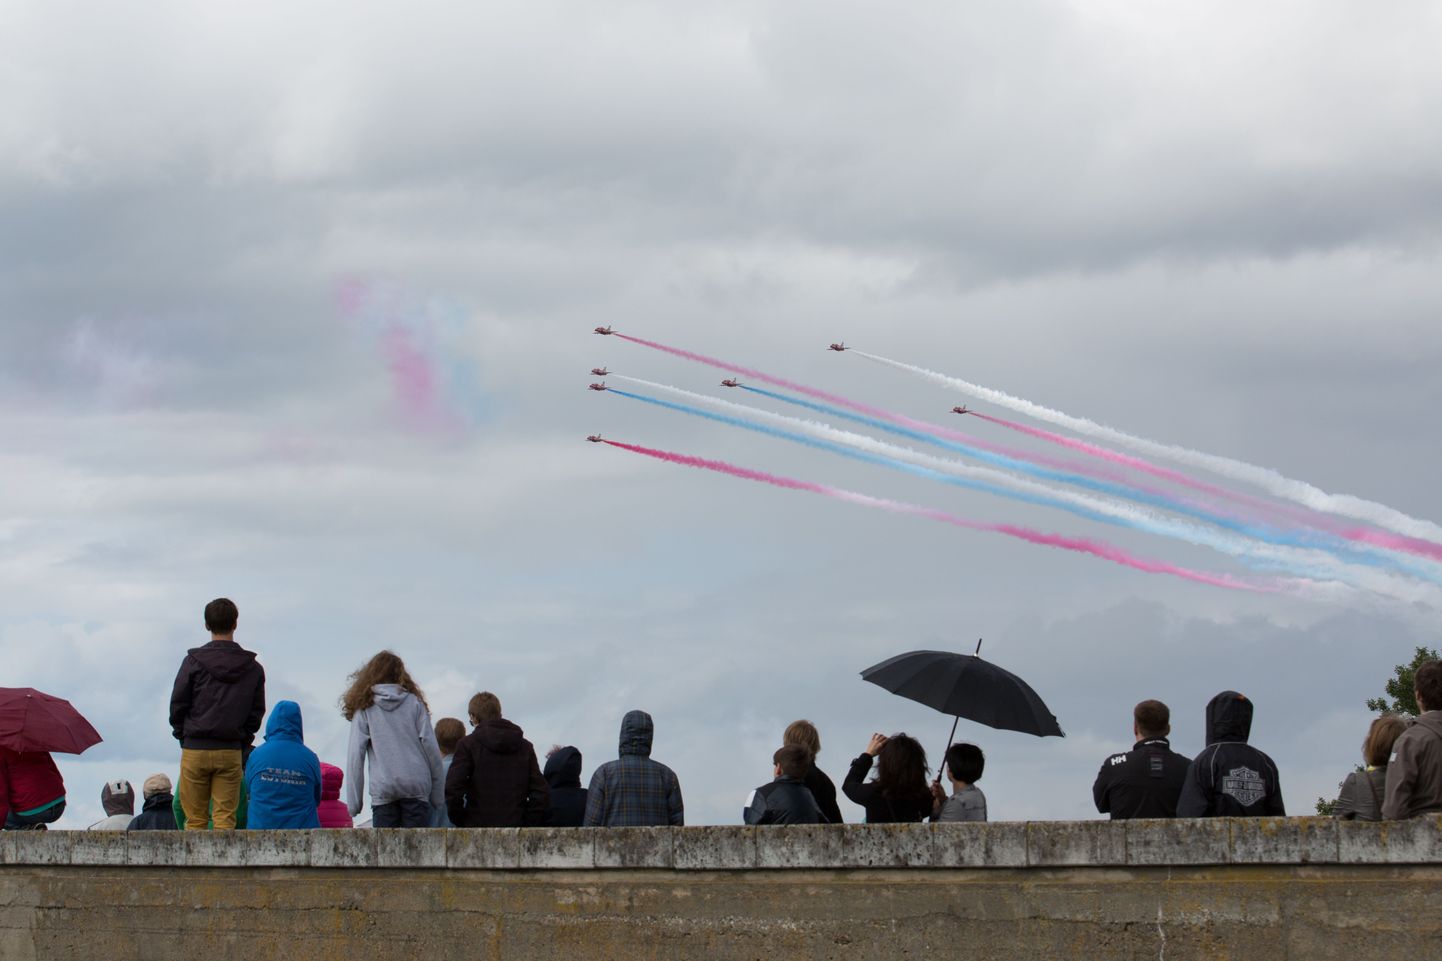 Ühendkuningriigi kuninglike õhujõudude vigurlennu show Tallinna lahe kohal.